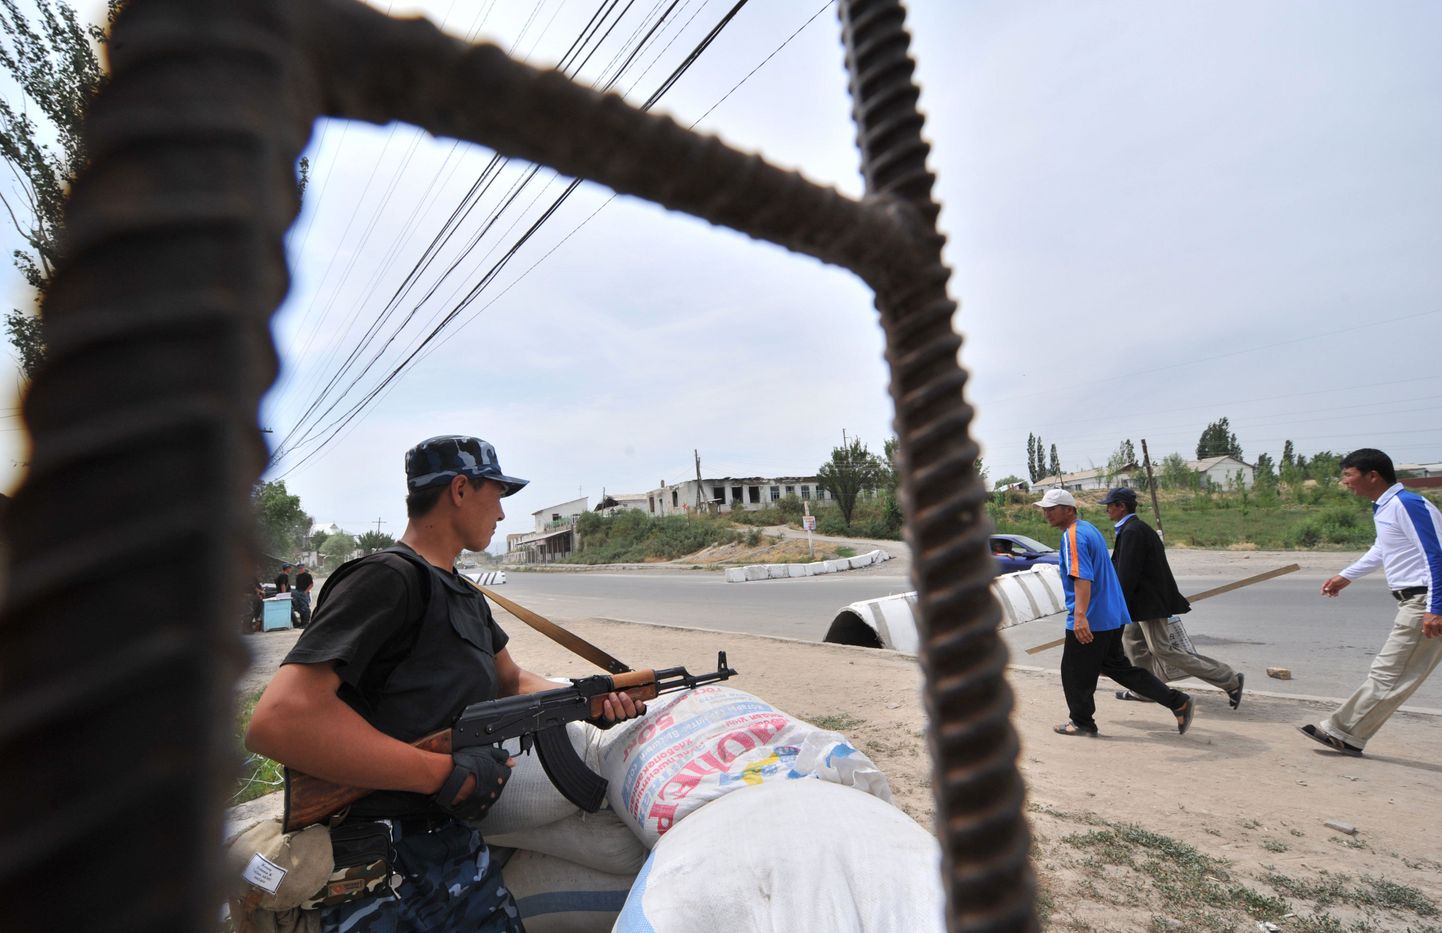 Kõrgõzstani politseinik Oši linna sissepääsu juures olevas kontrollpunktis. Pilt on tehtud 10. juunil, mil tähistati aasta möödumist usbekkide ja kirgiiside etnilistest kokkupõrgetest.